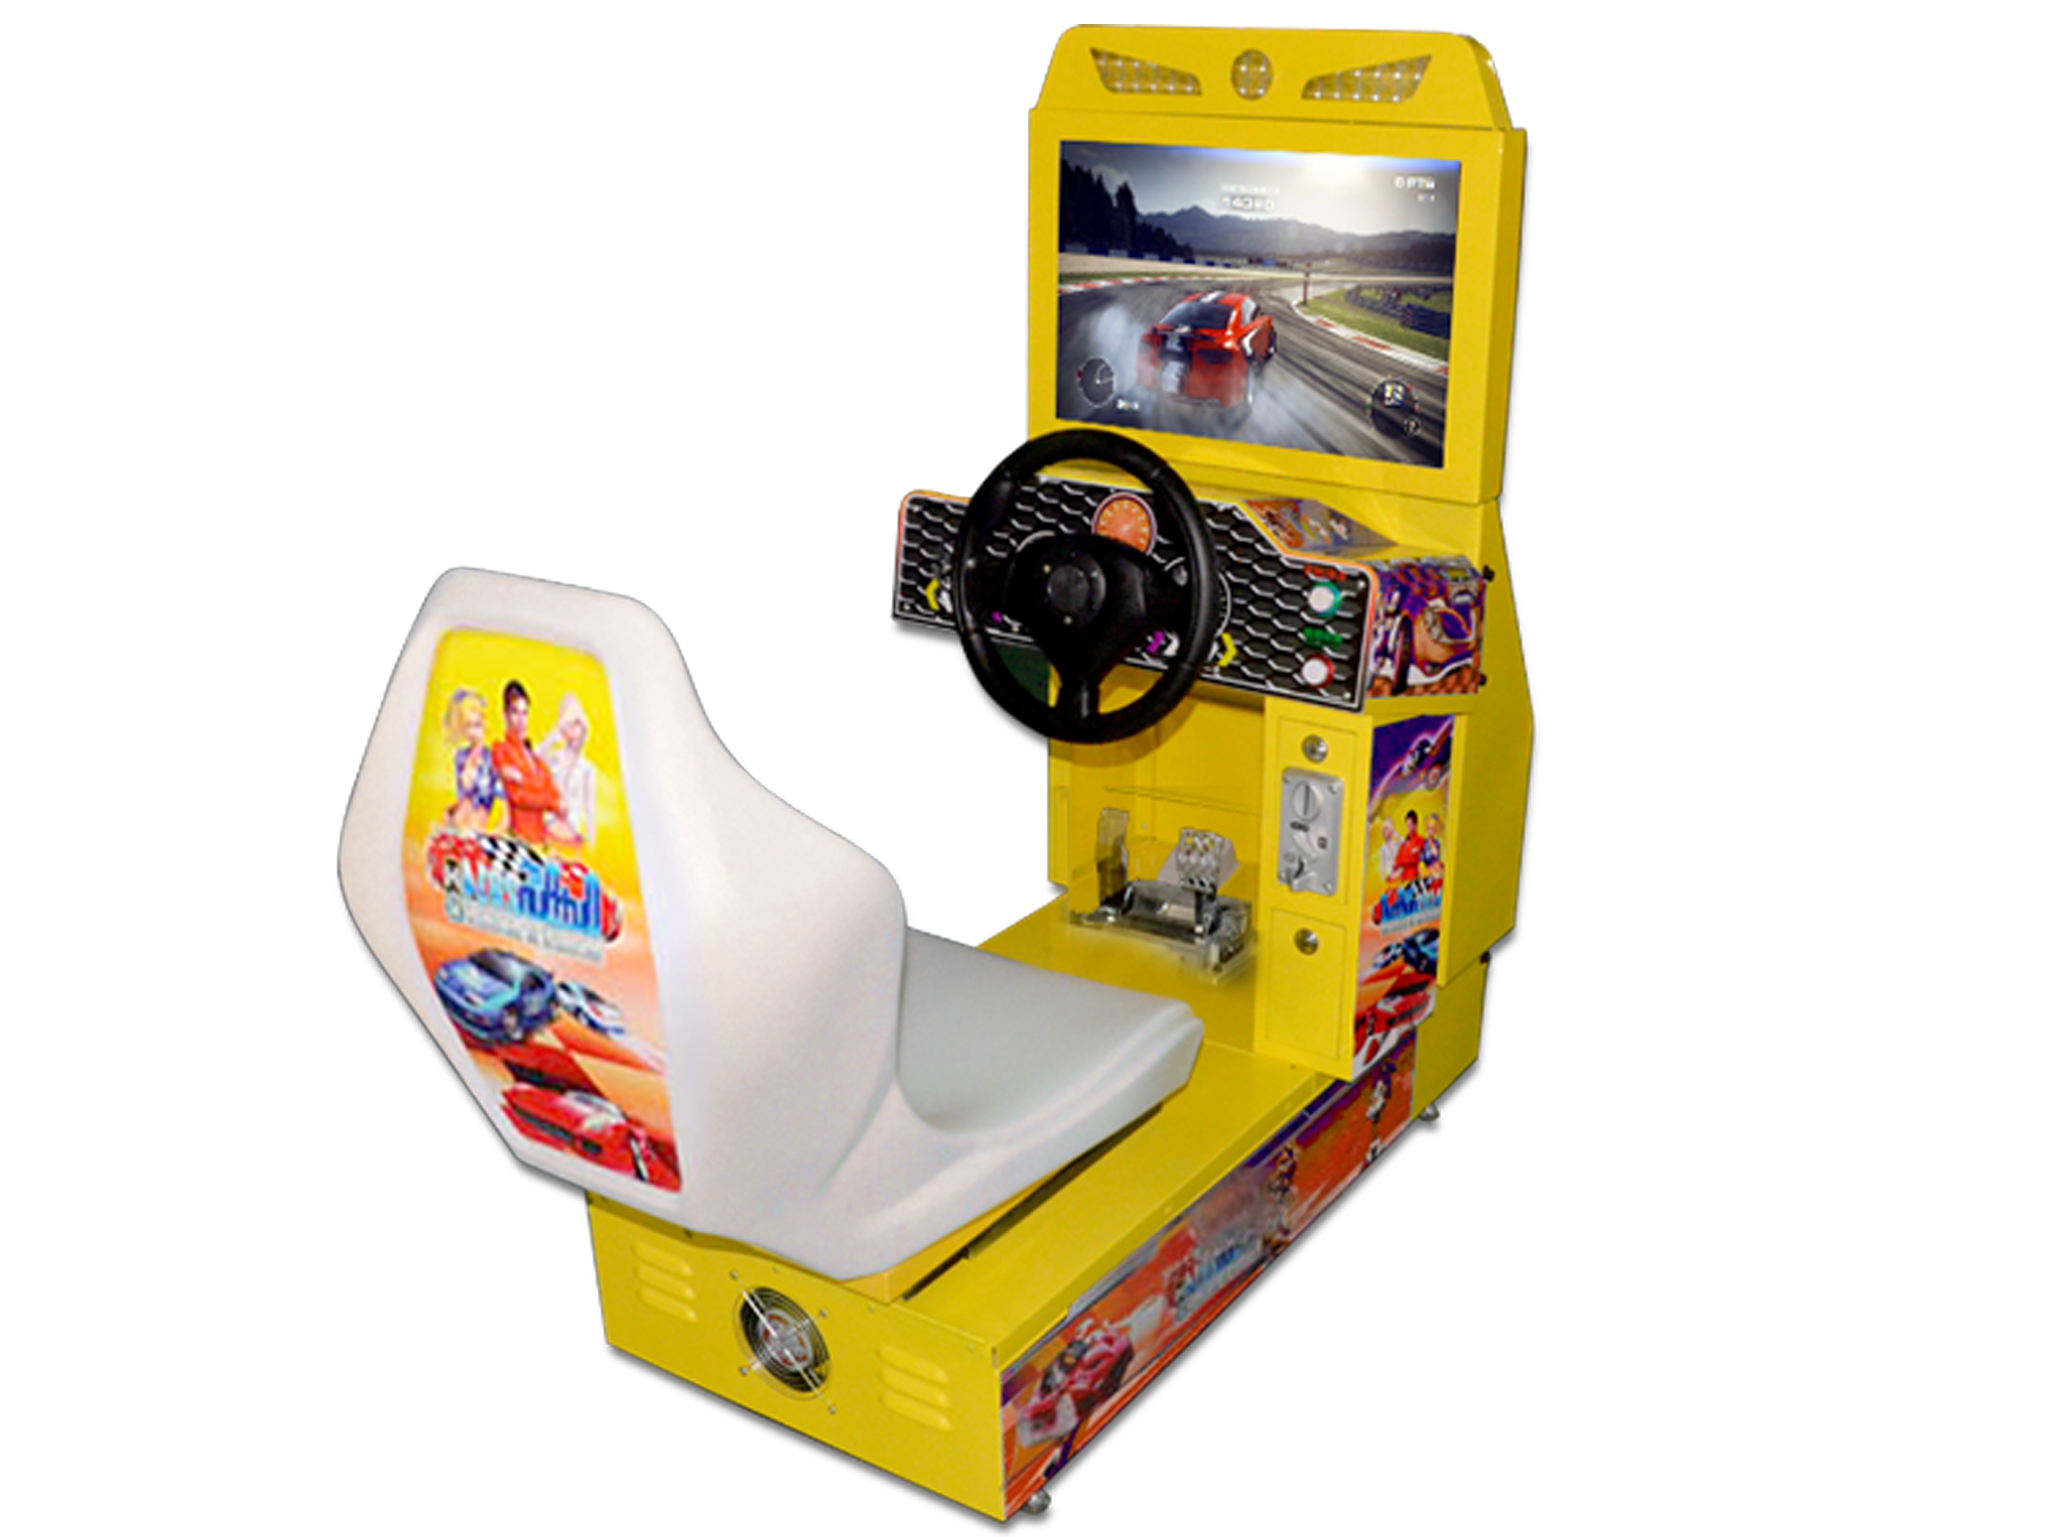 Outrun Arcade Racing Machine Guangzhou Qingfeng Electronics Co Ltd